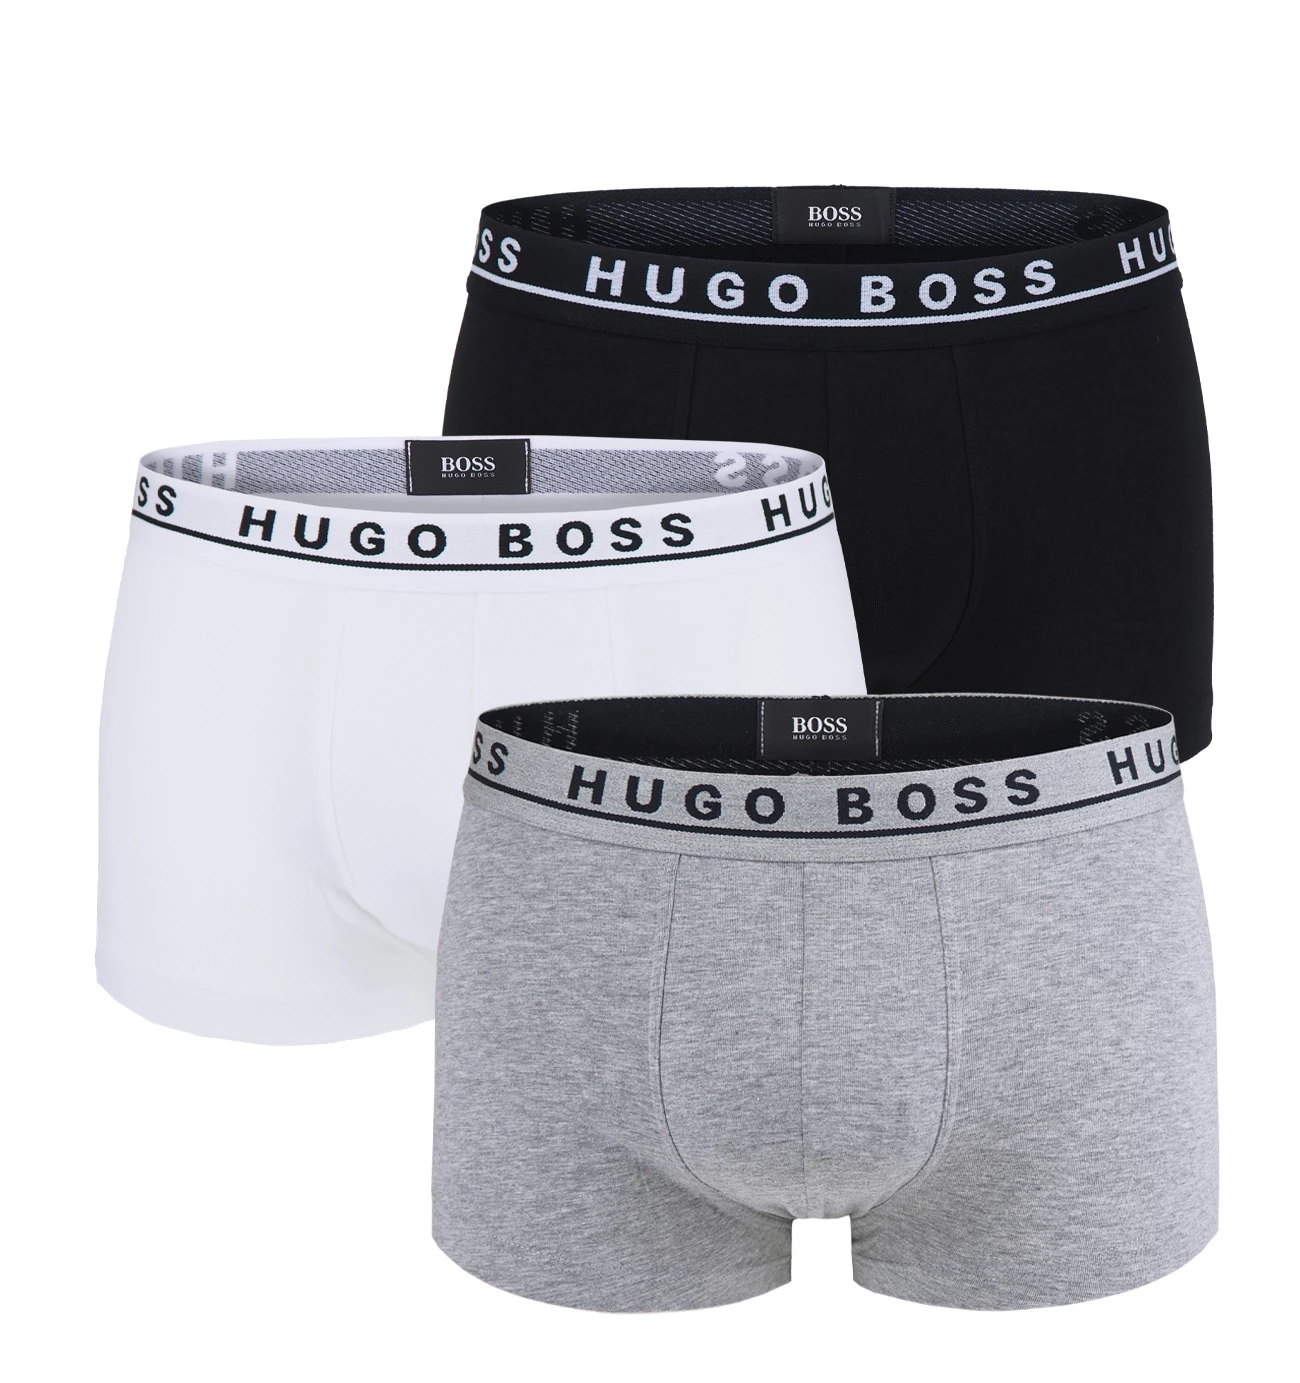 BOSS - 3PACK boxerky black, white, gray (HUGO BOSS)